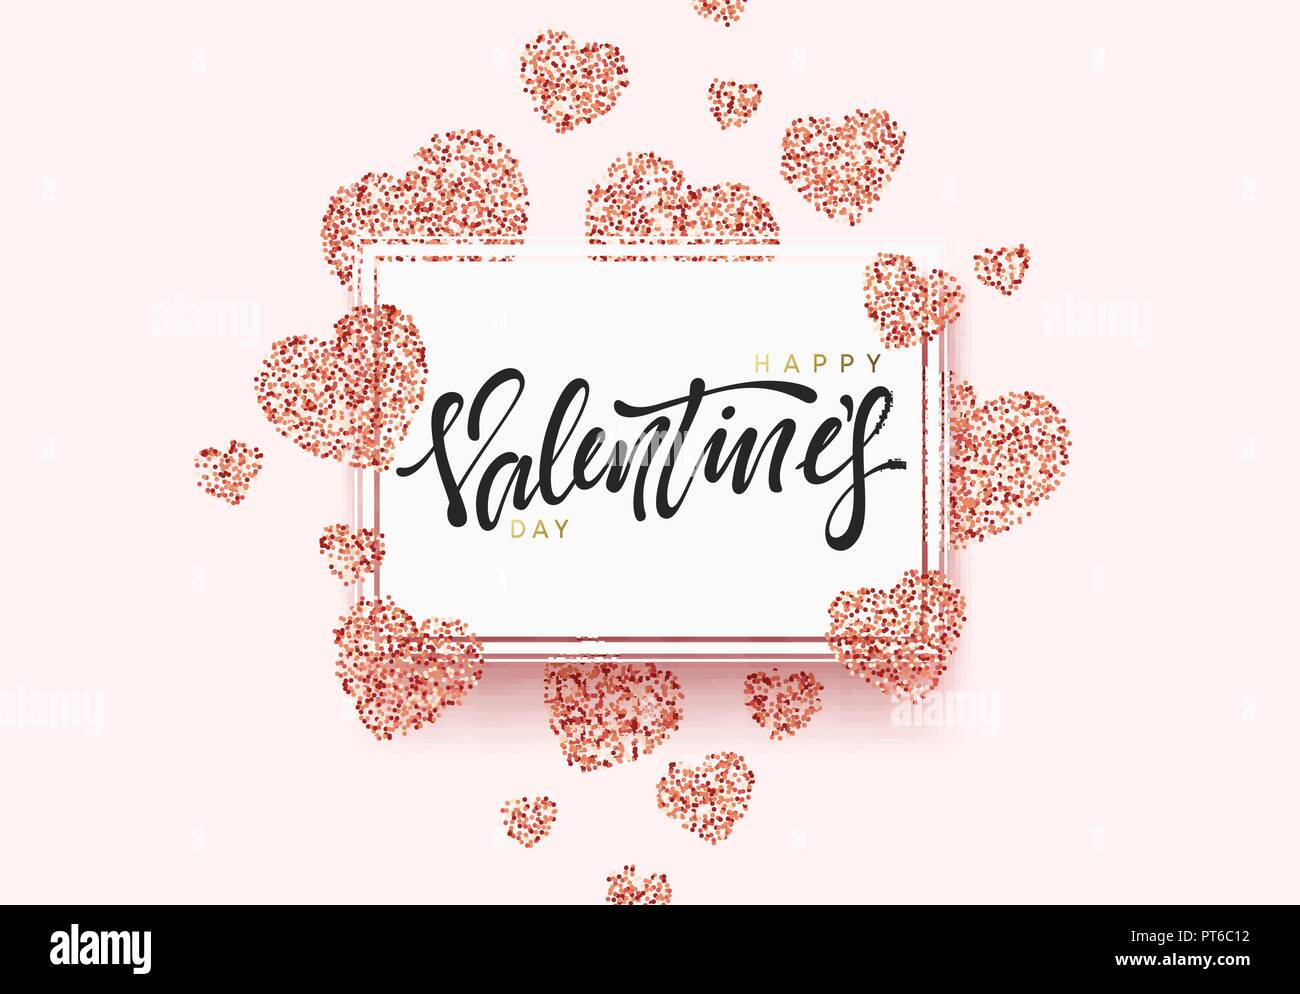 Happy Valentines Day Schriftzug Grußkarte auf leuchtend rotes Herz Hintergrund. Festliche Banner und Poster. Stock Vektor